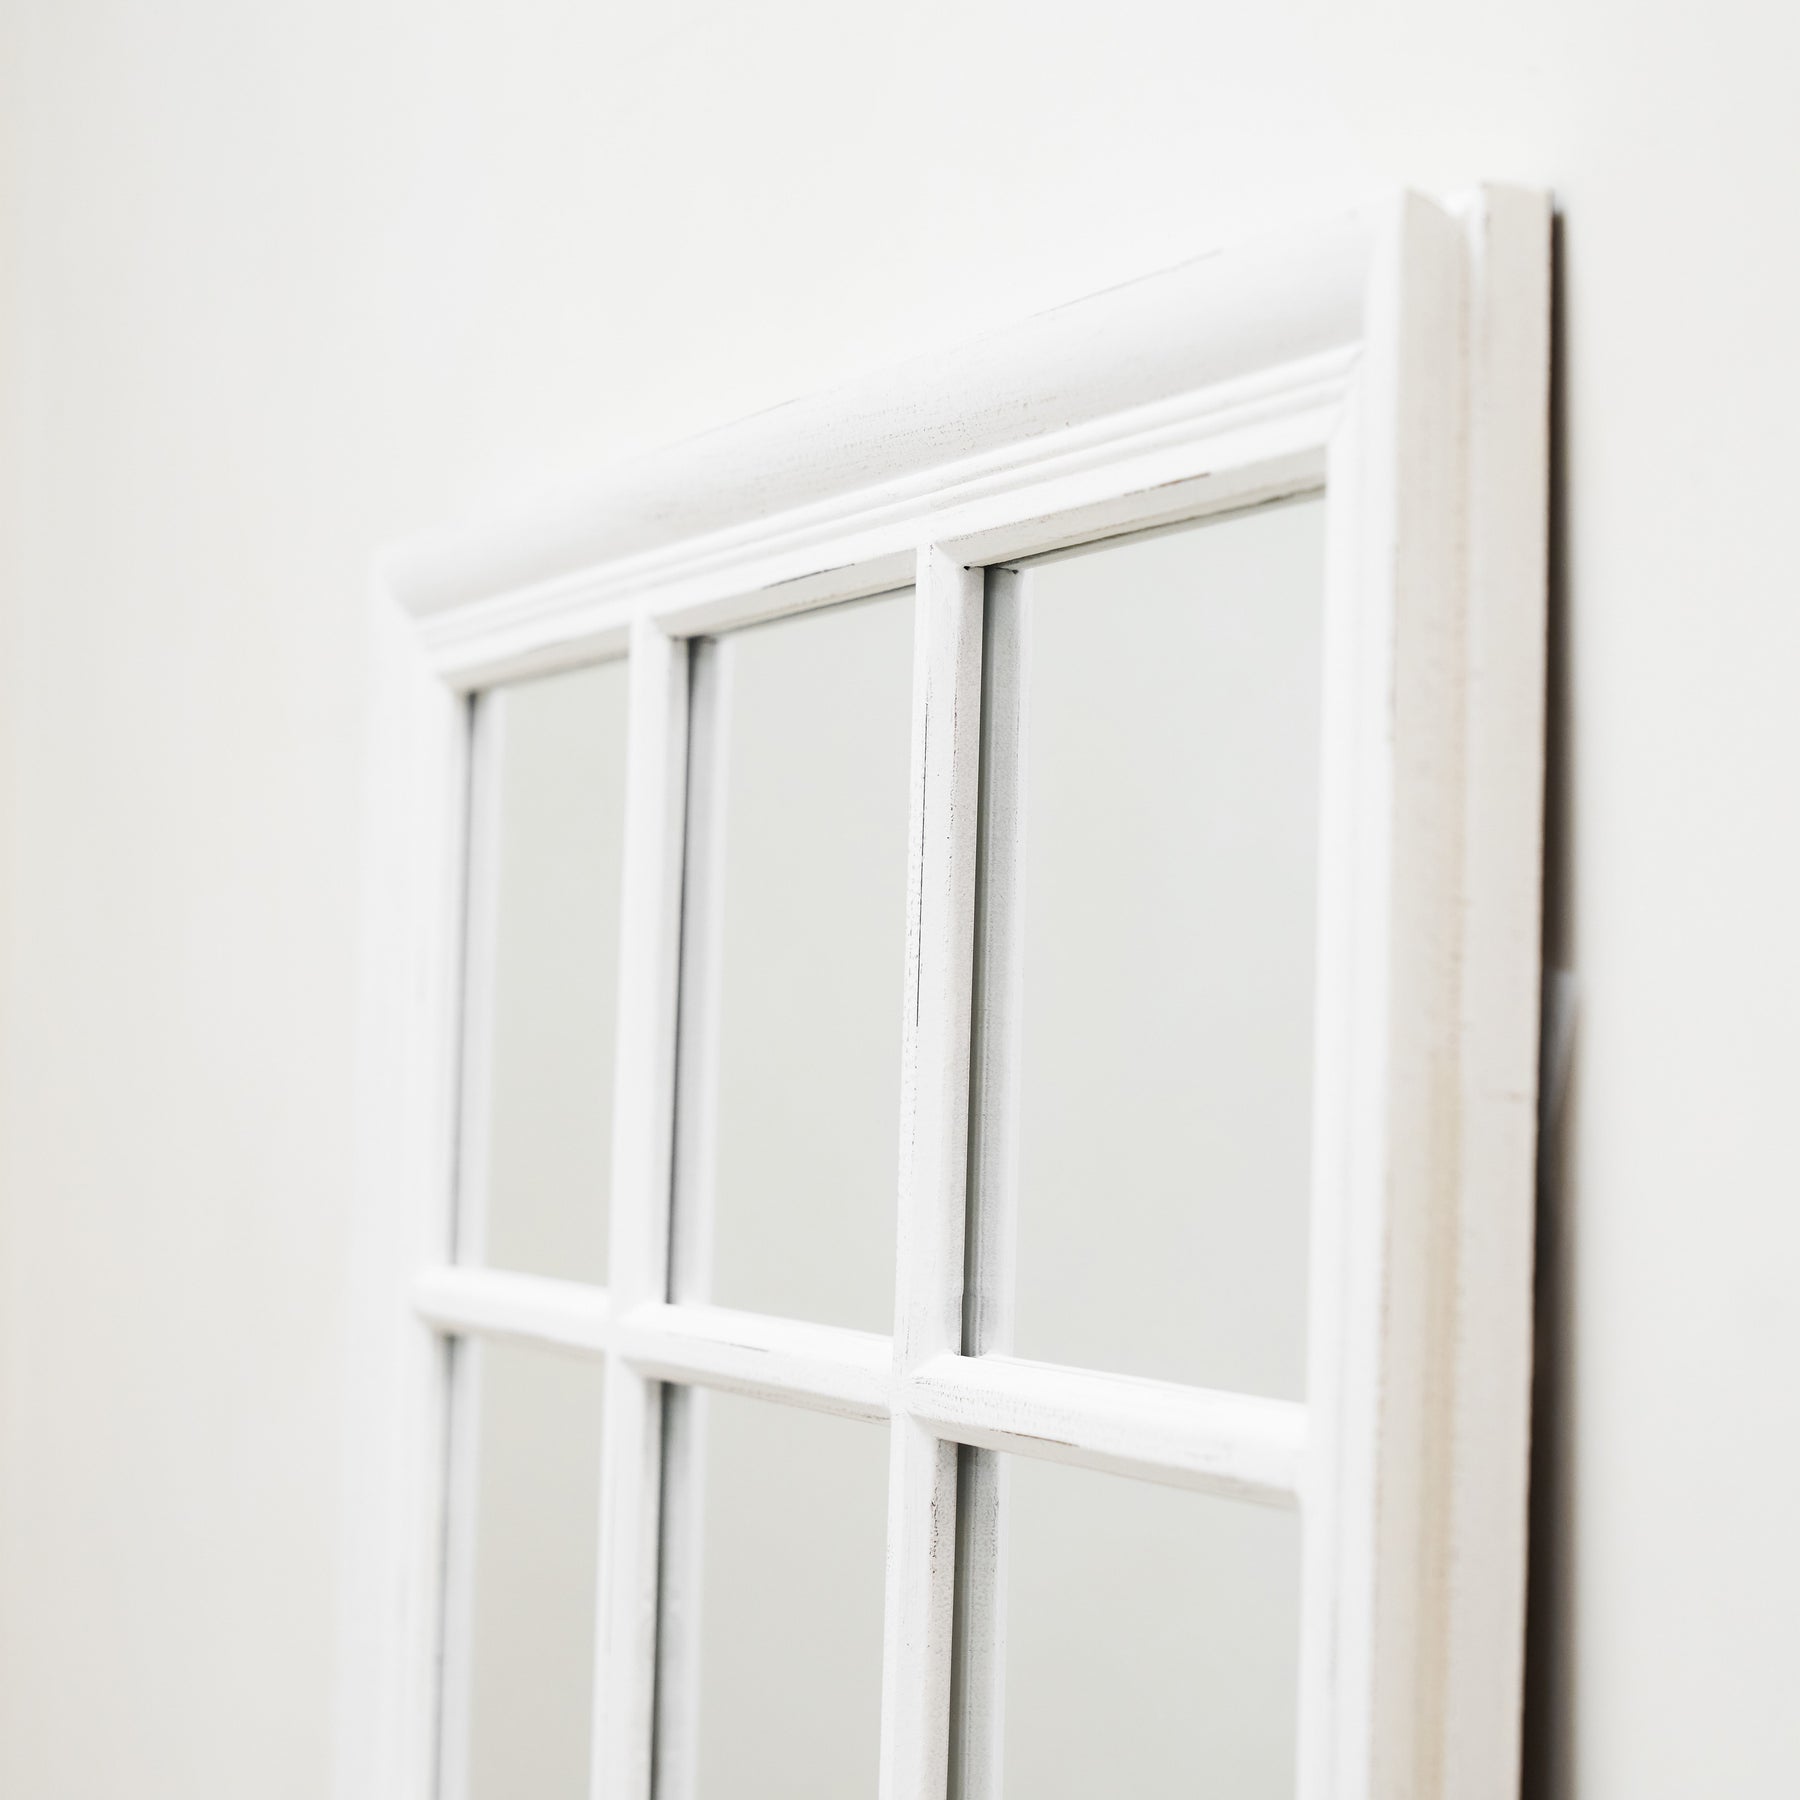 Sasha - White Shabby Chic Rectangular Window Mirror 100cm x 75cm